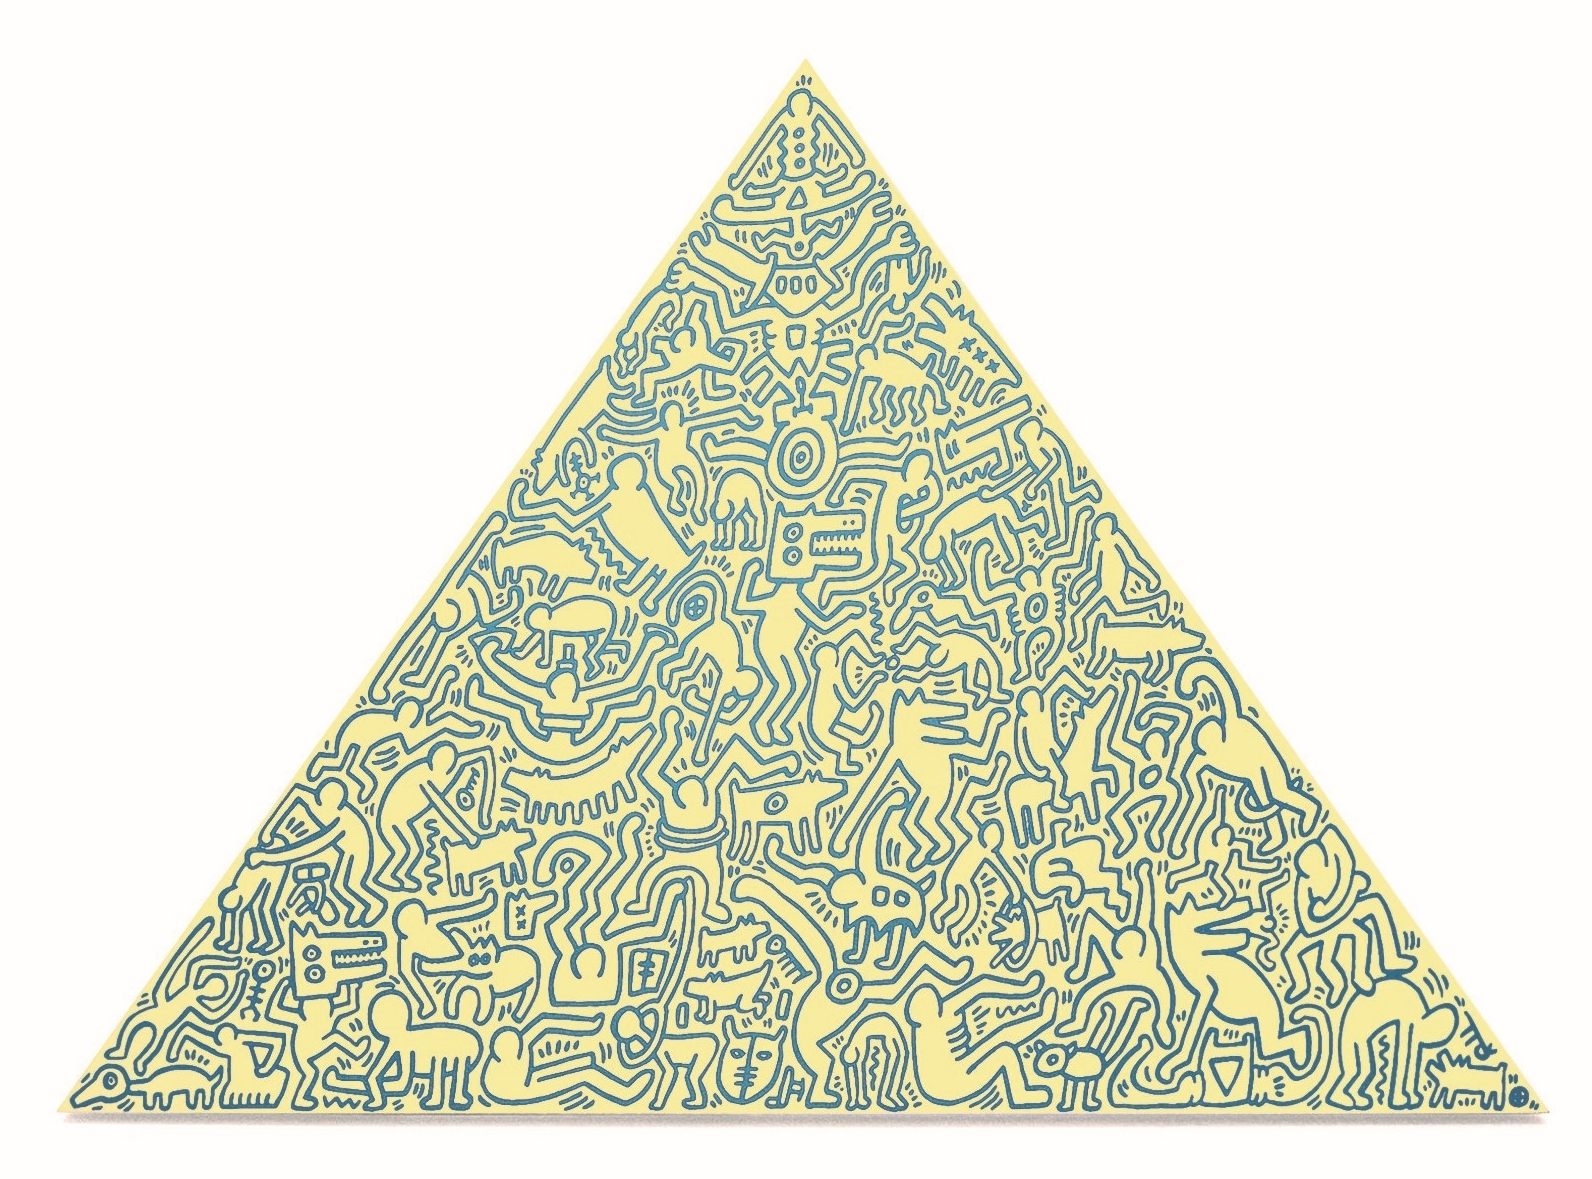 Keith Haring - Pyramid